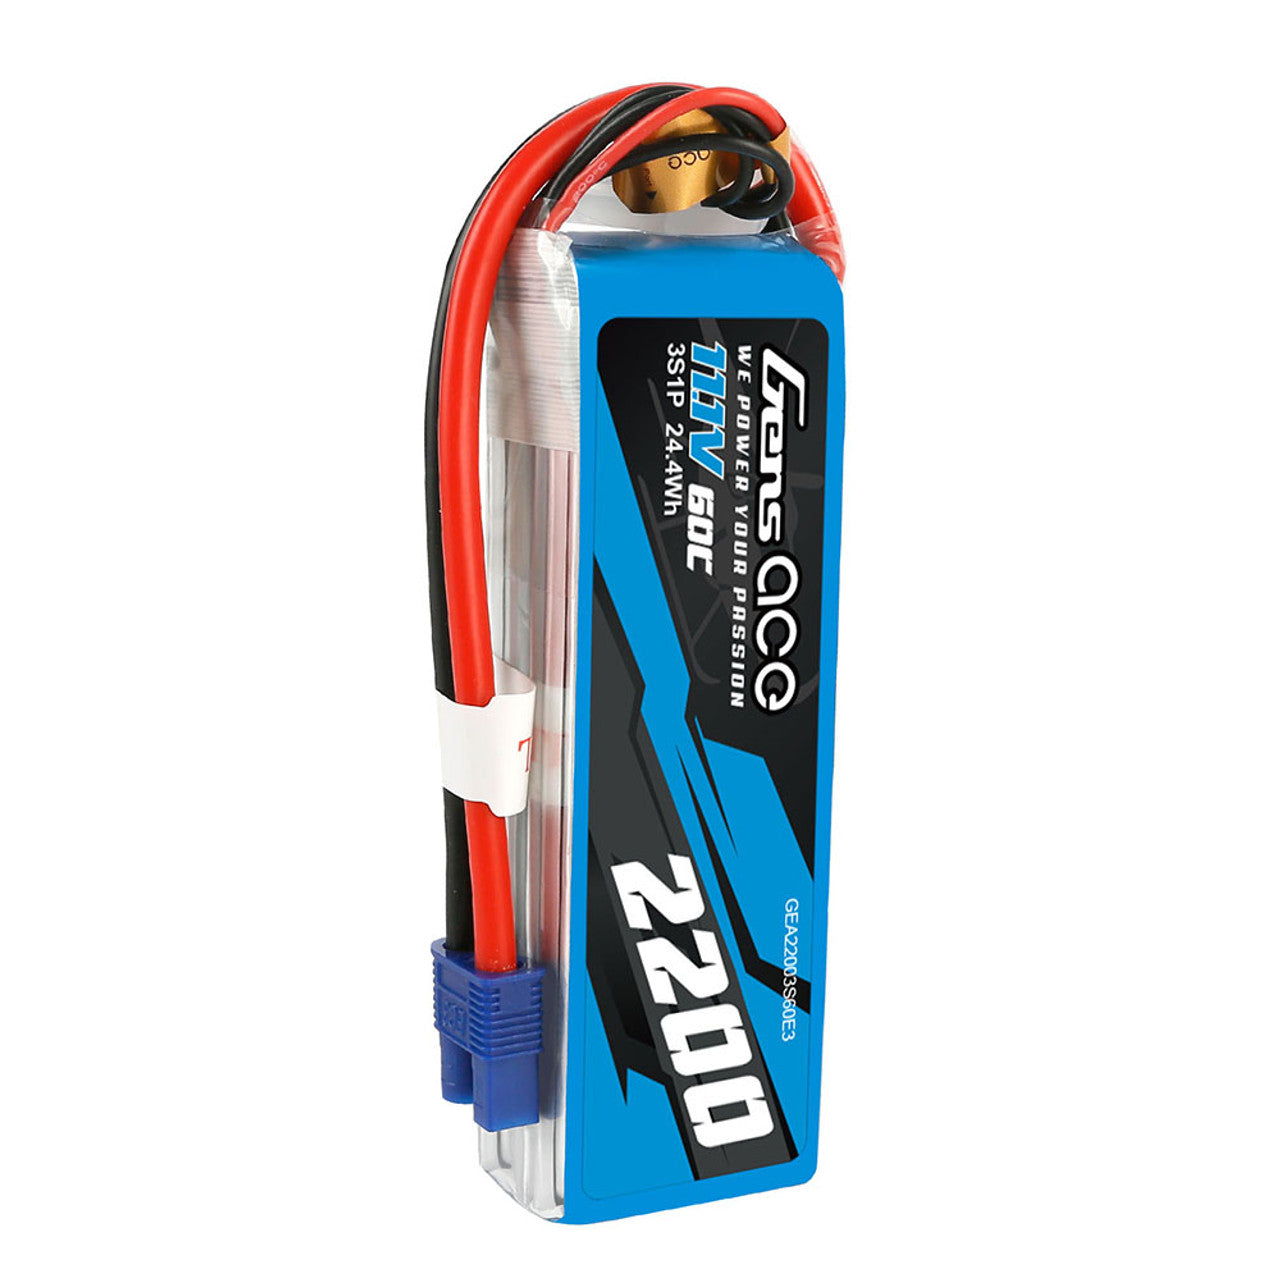 GEA22003S60E3 Gens Ace 2200mAh 11.1V 60C 3S1P batterie Lipo avec prise EC3